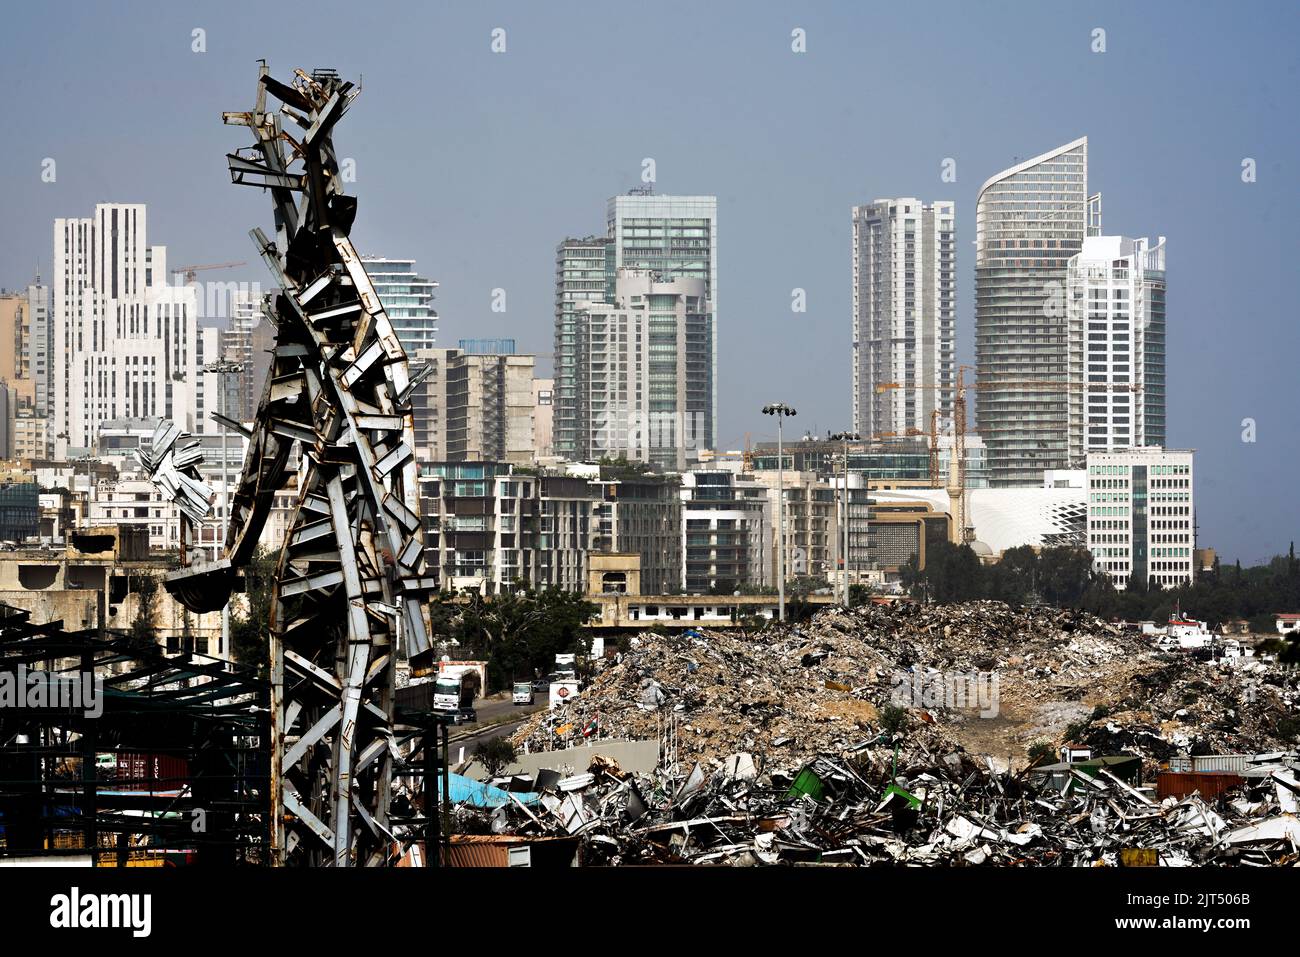 Beirut, Libano: Contro lo skyline della città moderna si trova la scultura in acciaio dell'artista Nadim Karam, che commemora le vittime della letale esplosione del 8/4/2020, fatta dai rottami metallici della massiccia esplosione di 2.750 tonnellate di nitrato di ammonio immagazzinato nel porto. Foto Stock